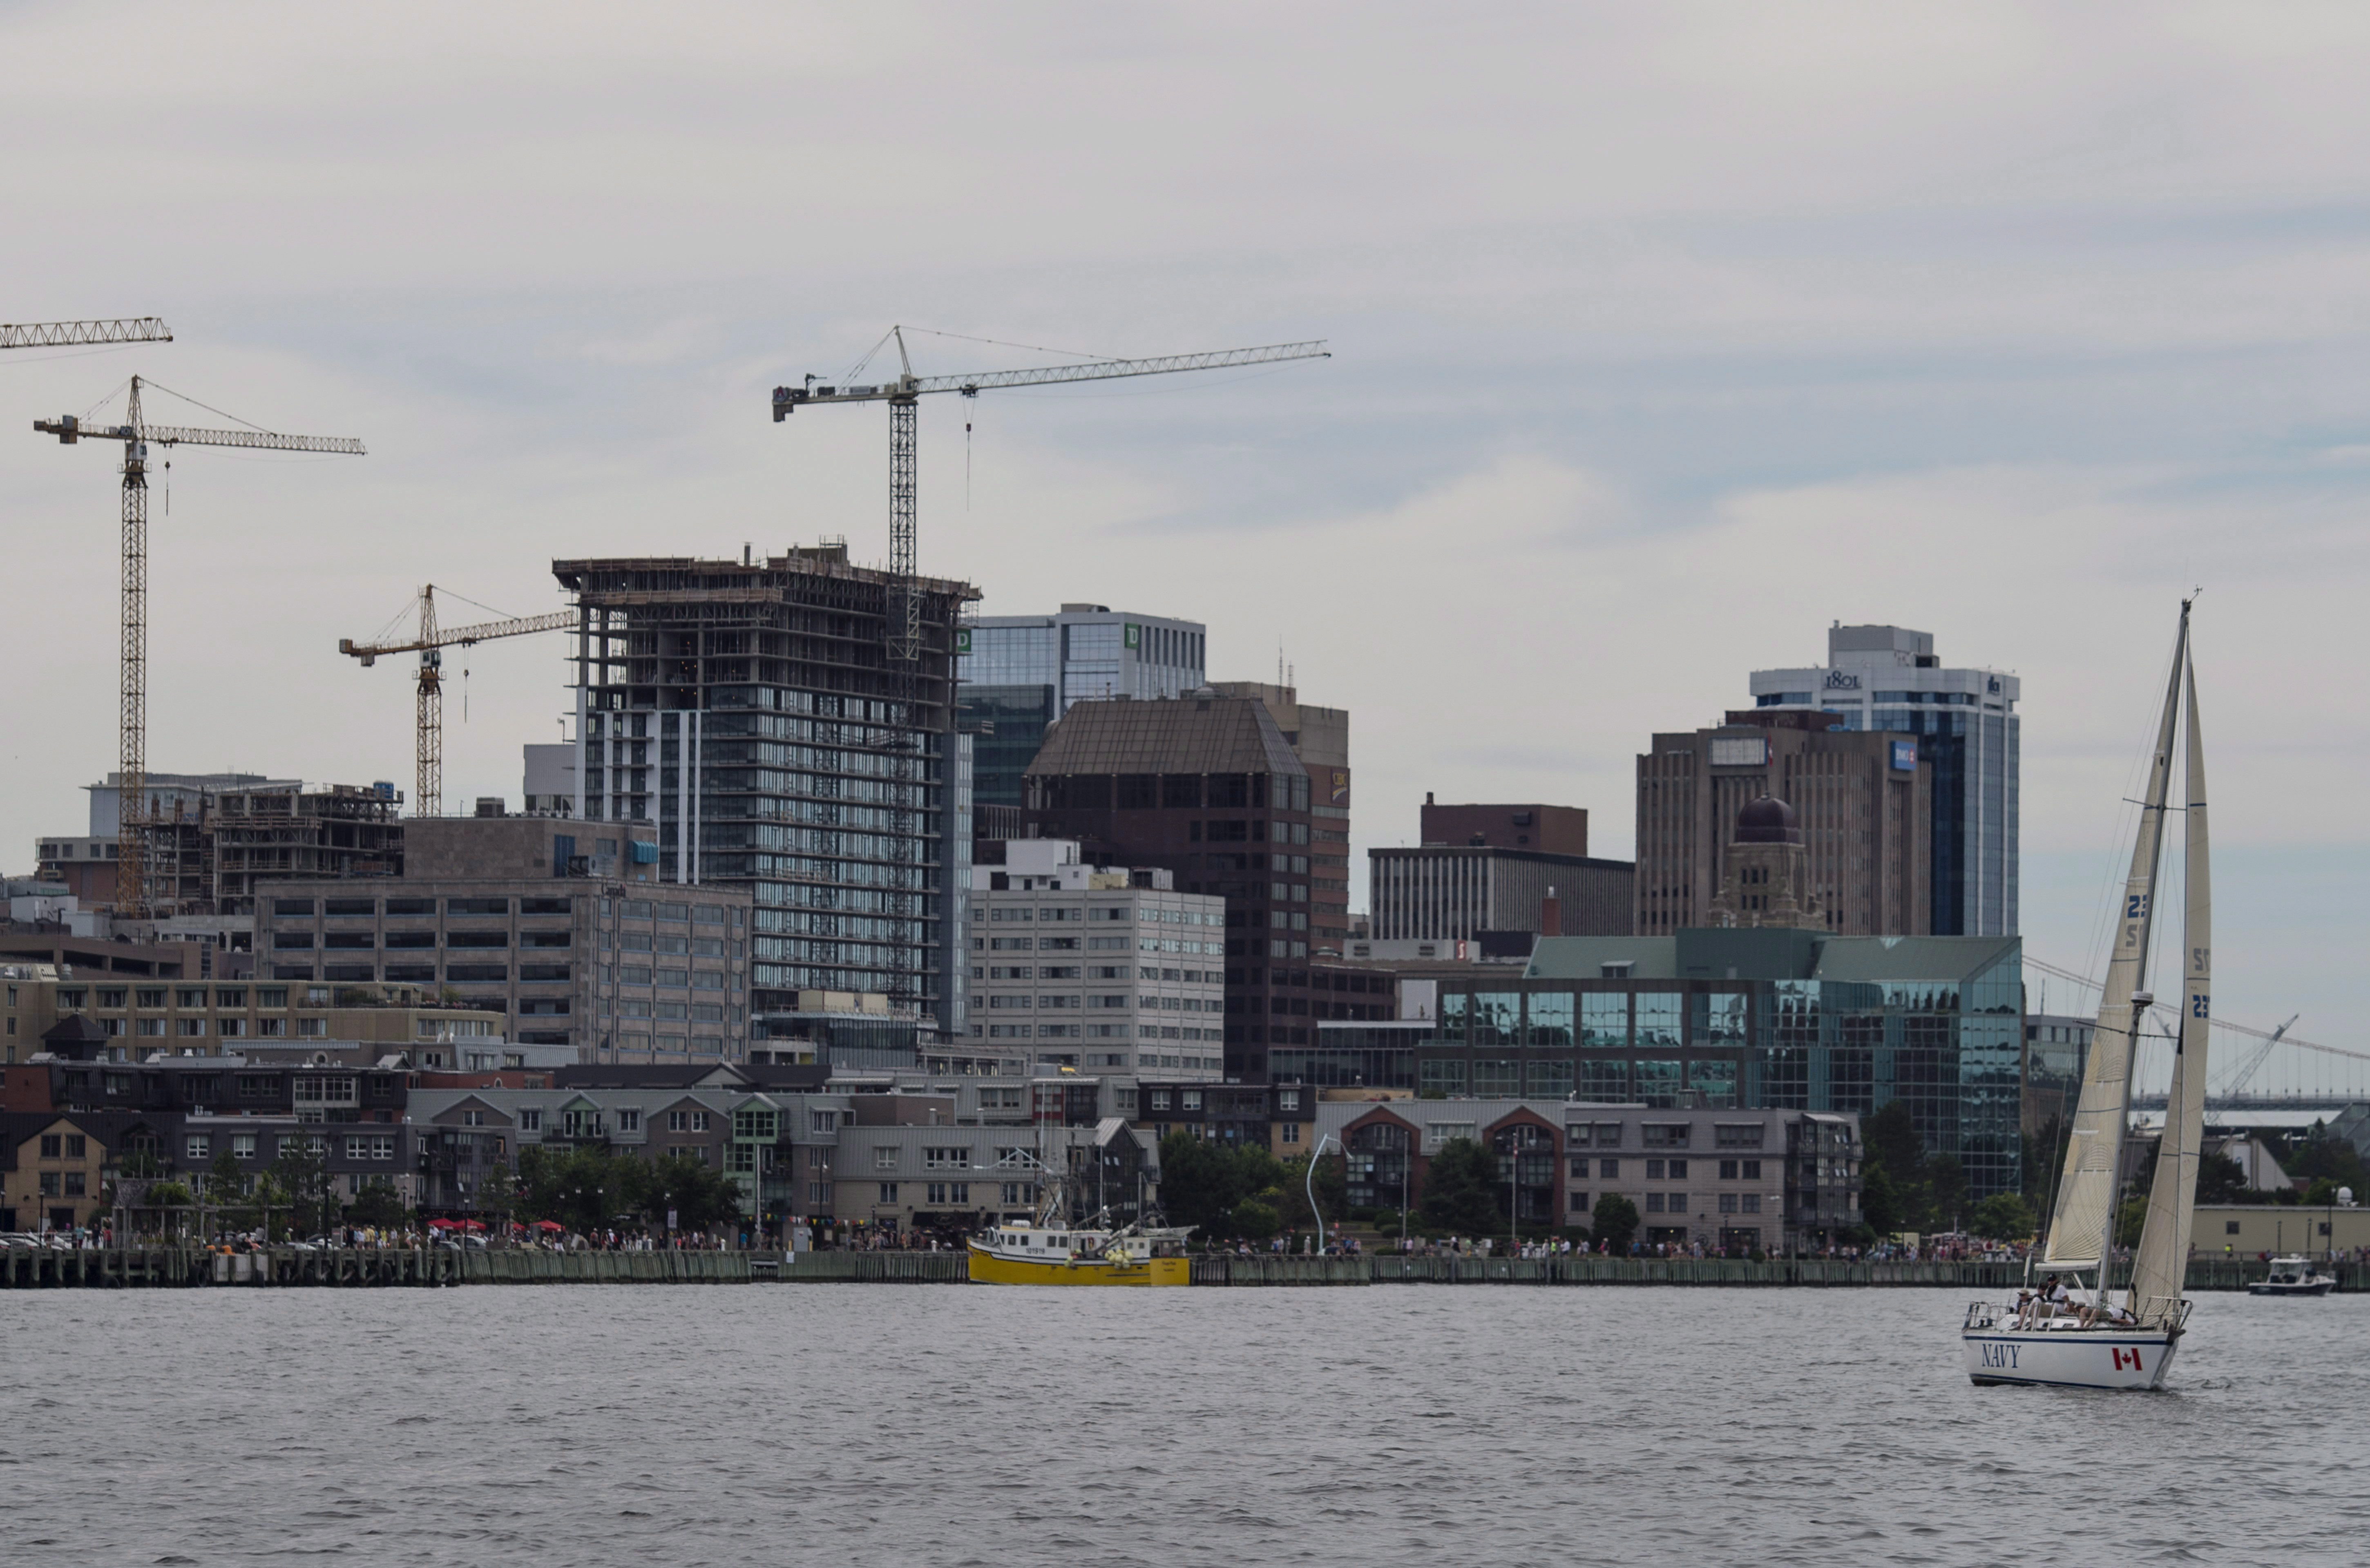 w niedzielę, 31 lipca 2016 roku, przed linią horyzontu Halifax widać żaglówkę. CANADIAN PRESS / Darren Calabrese